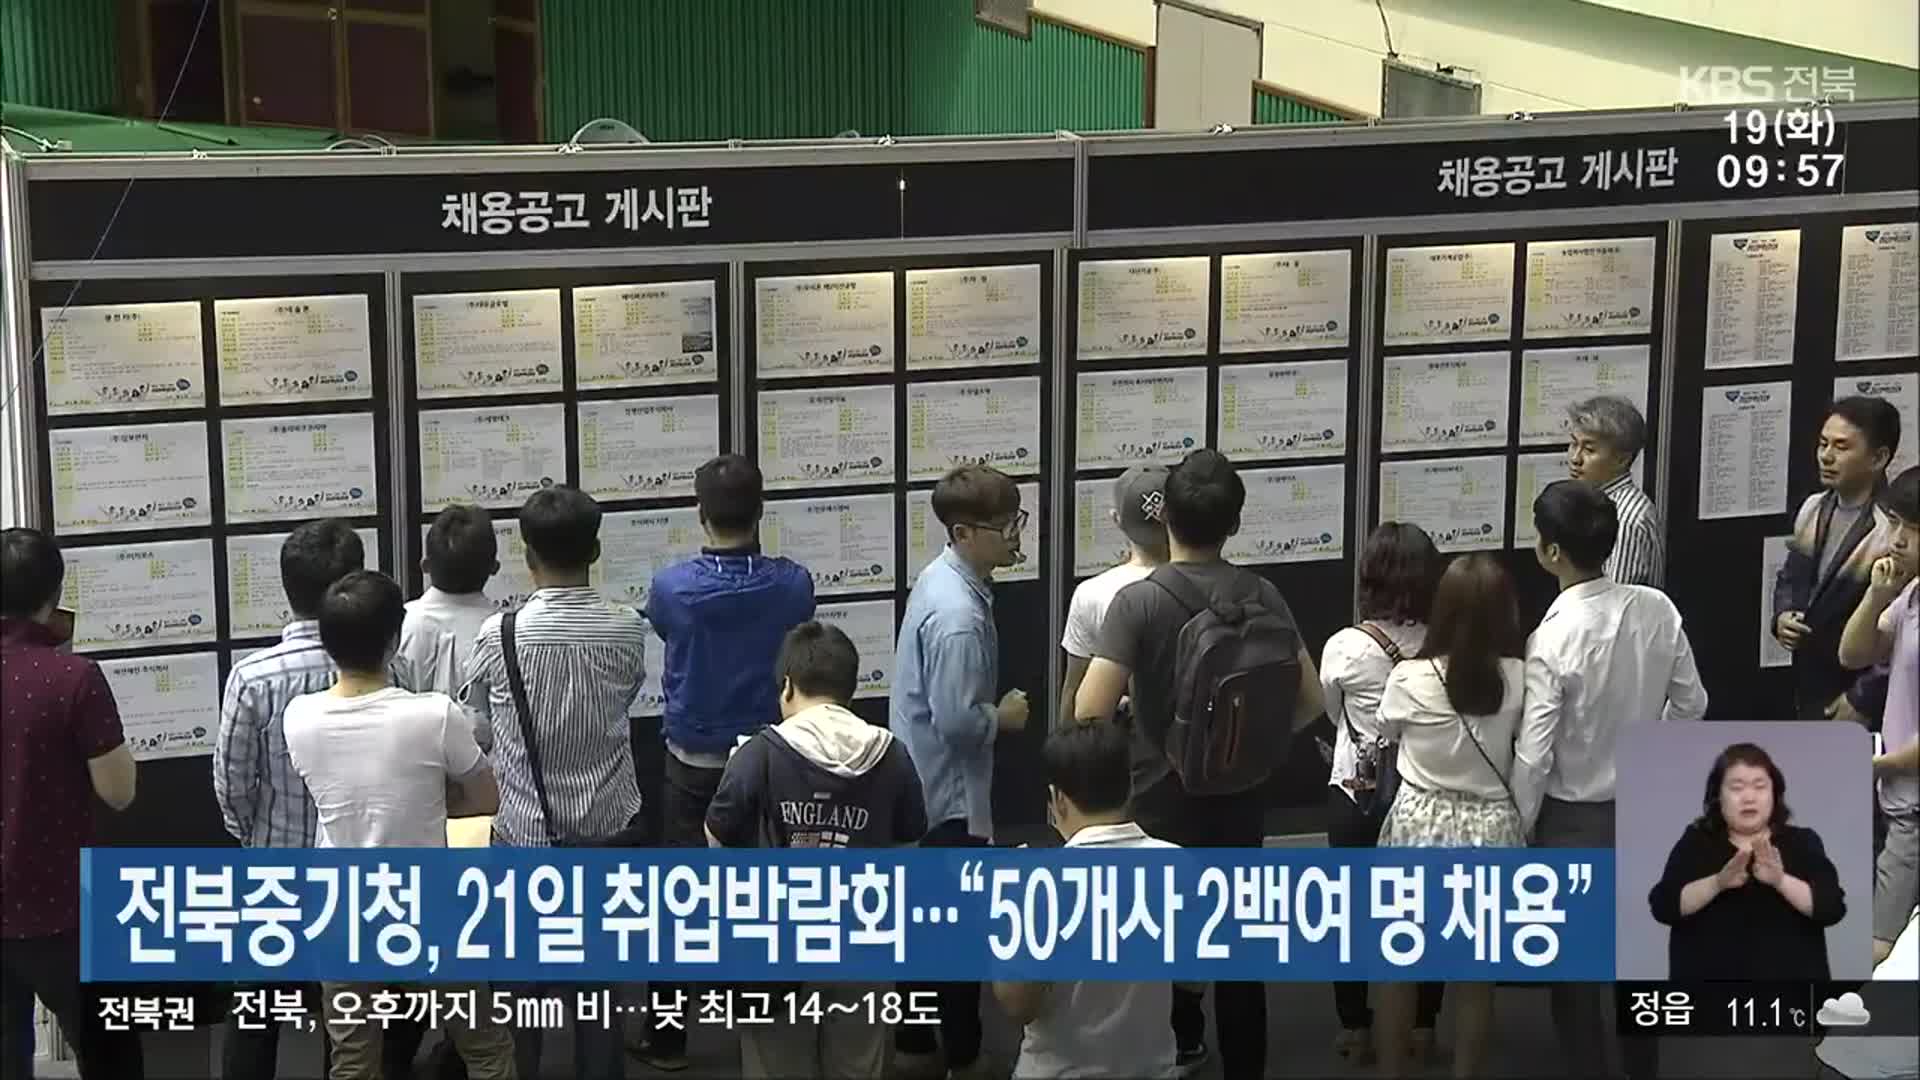 전북중기청, 21일 취업박람회…“50개사 2백여 명 채용”